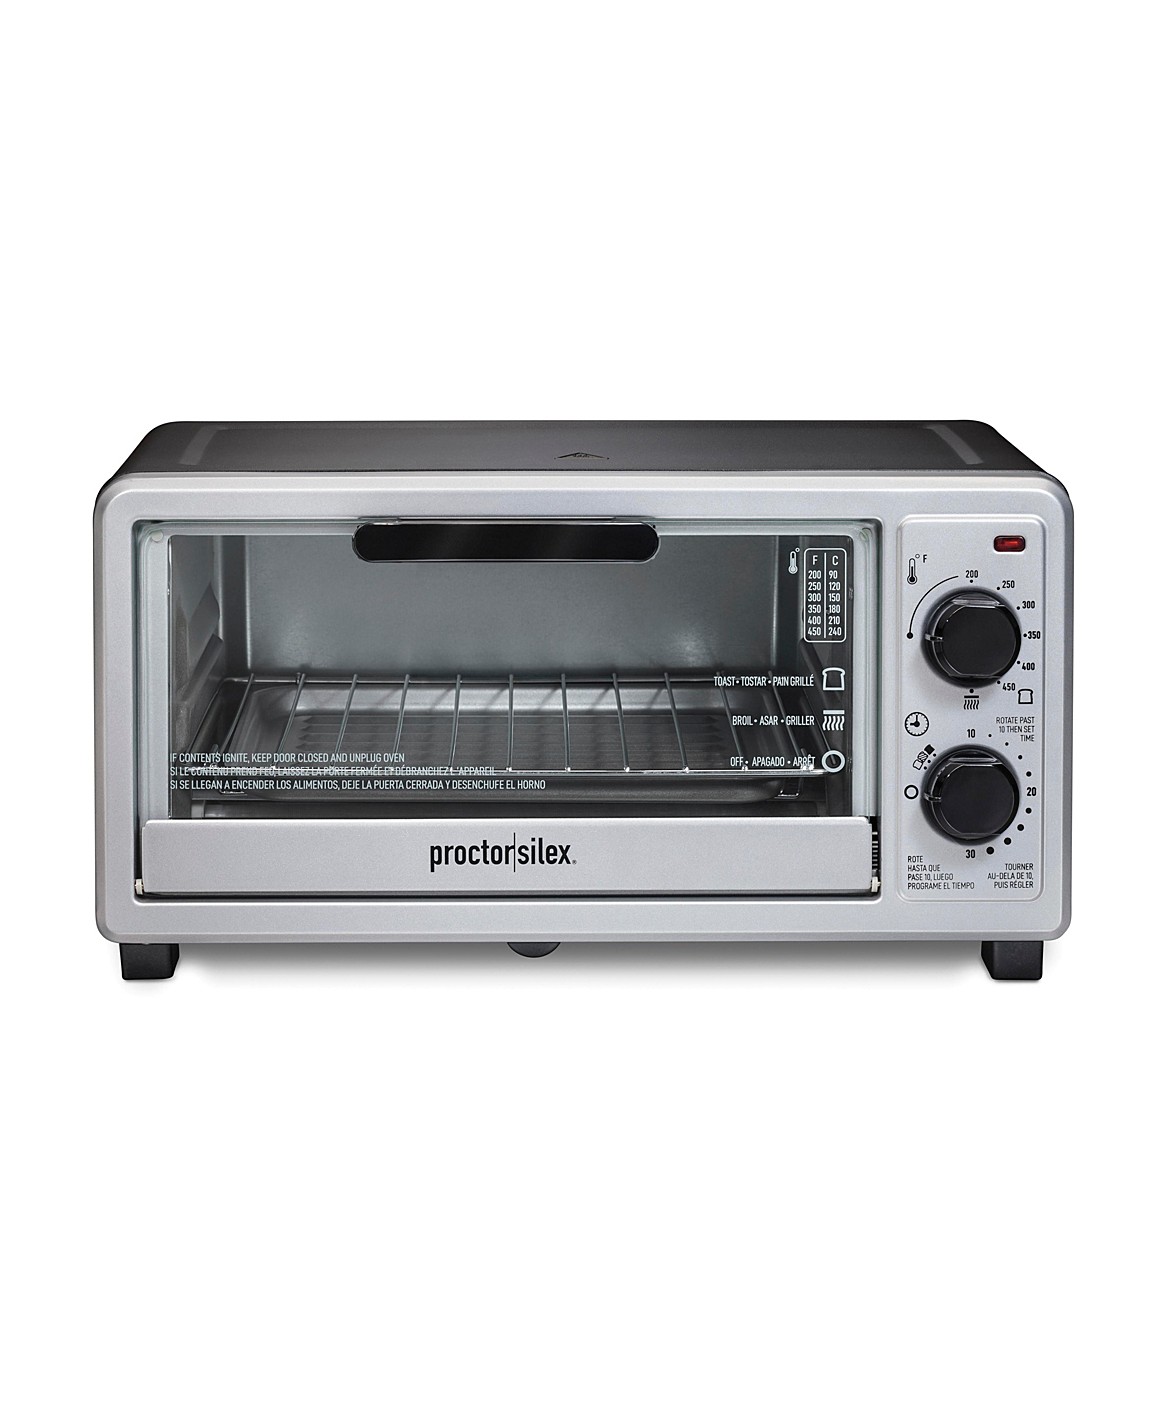 Proctor Silex Toaster Oven Broiler: אפשרות תקציבית לצורכי בישול בסיסיים